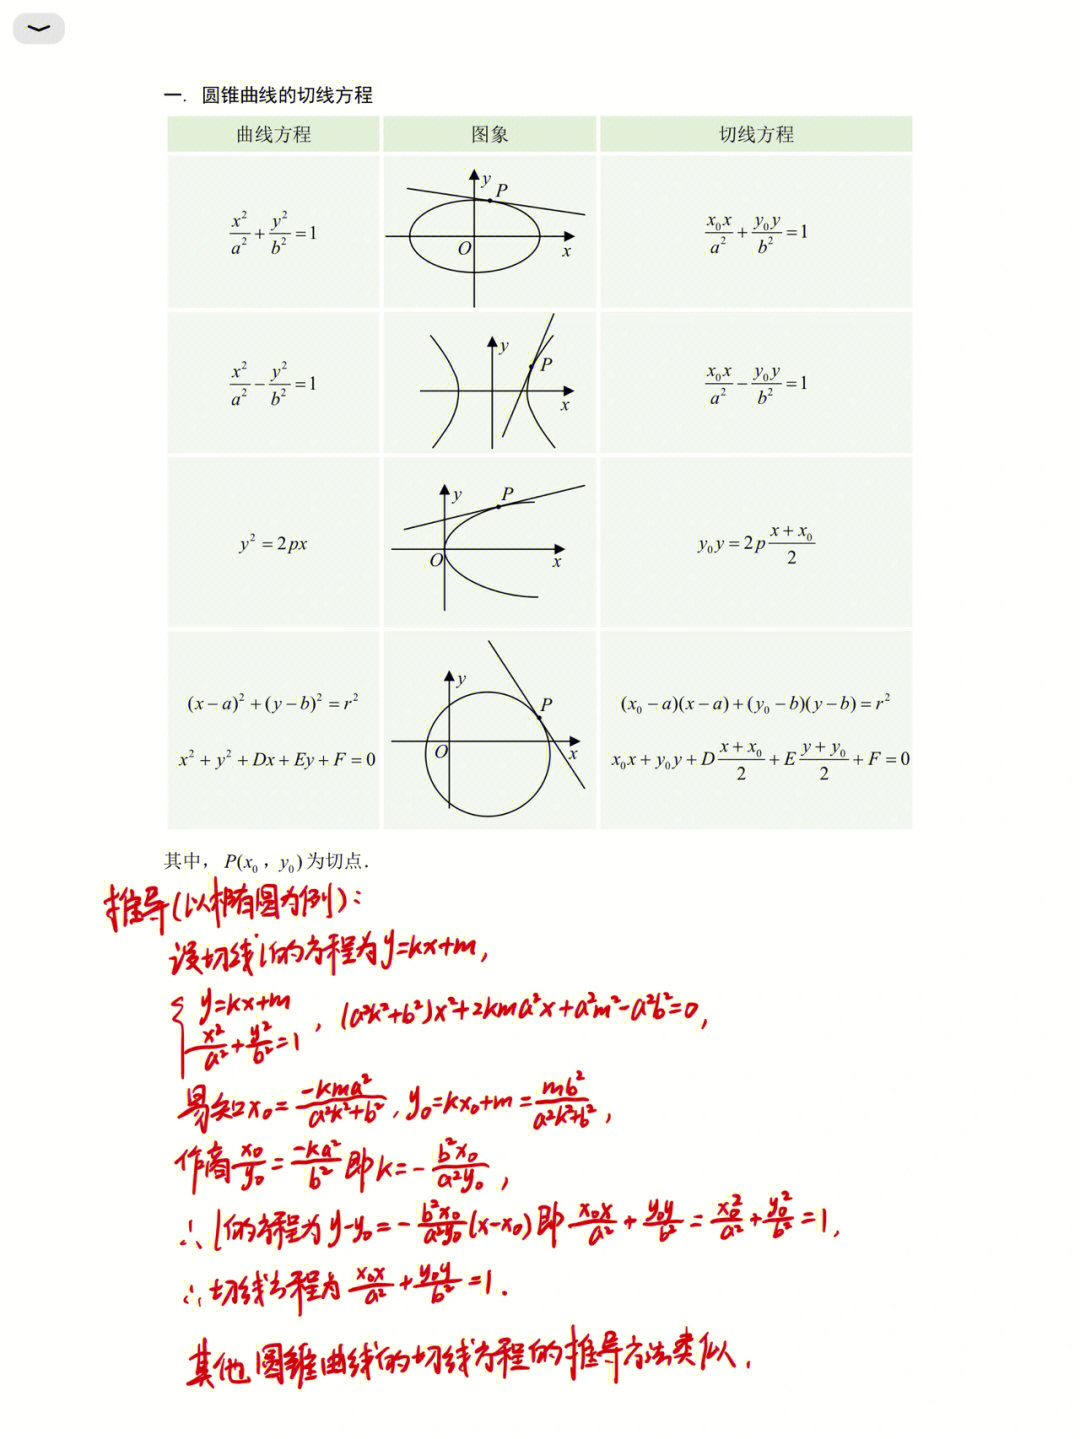 圆锥面的一般方程图片